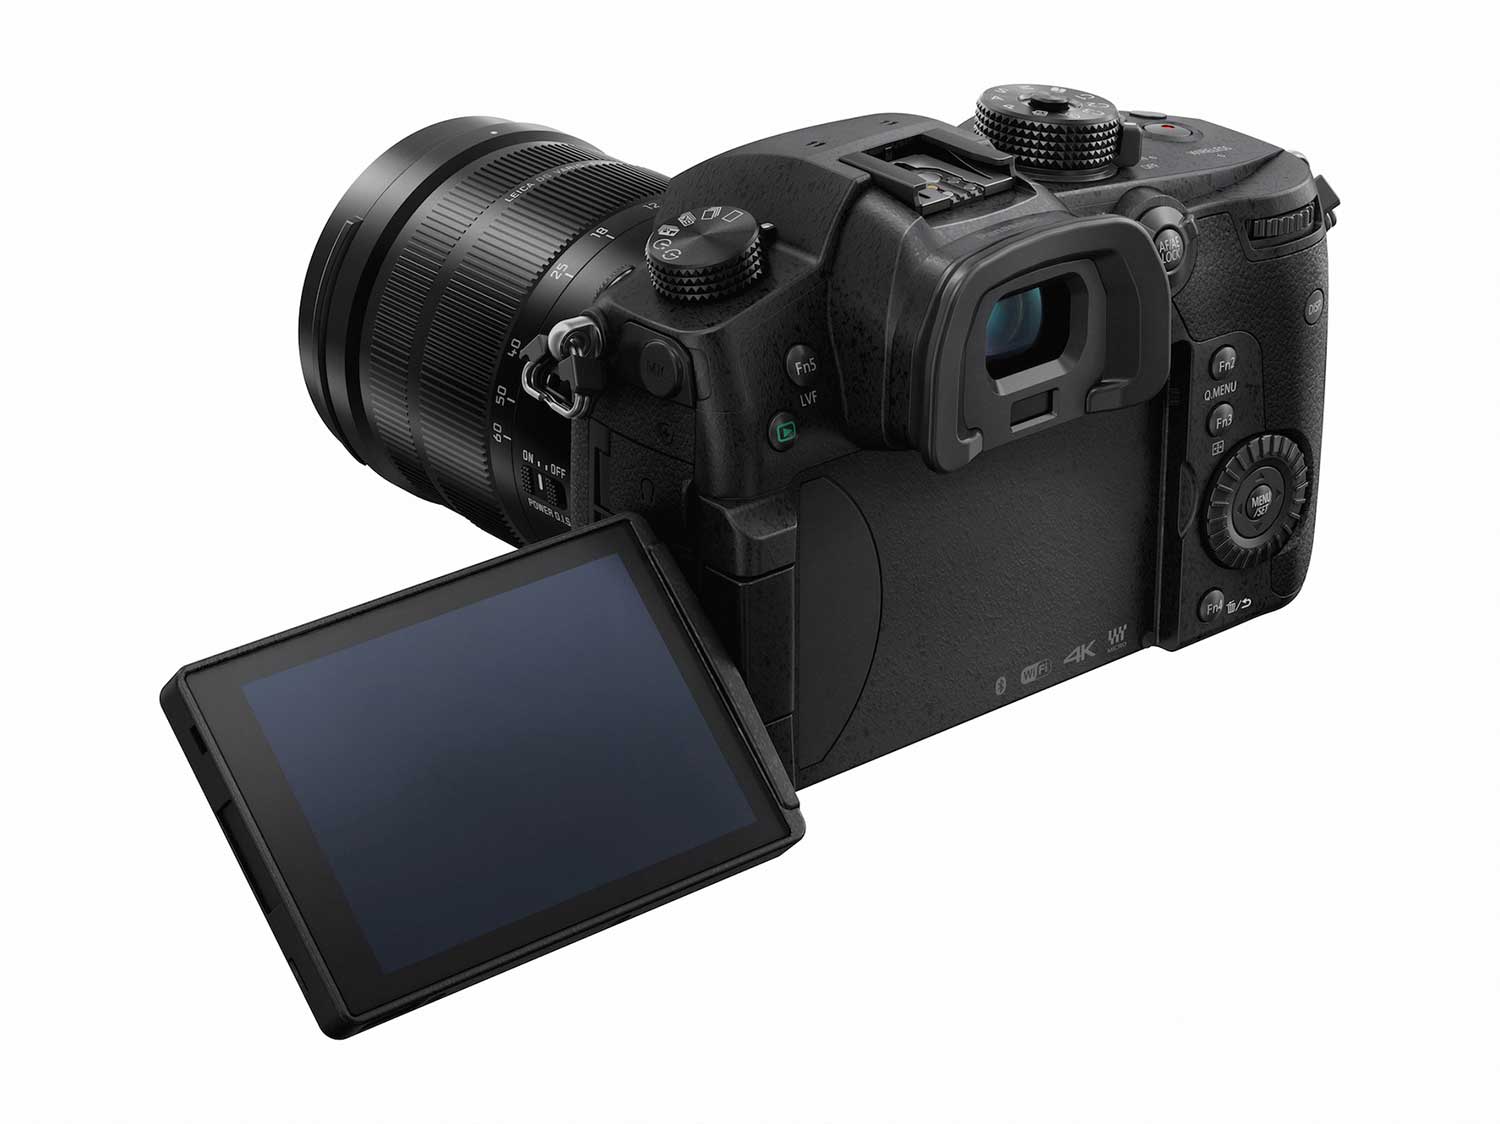 Lumix GH5: Die neue Micro-Four-Thirds-Kamera von Panasonic